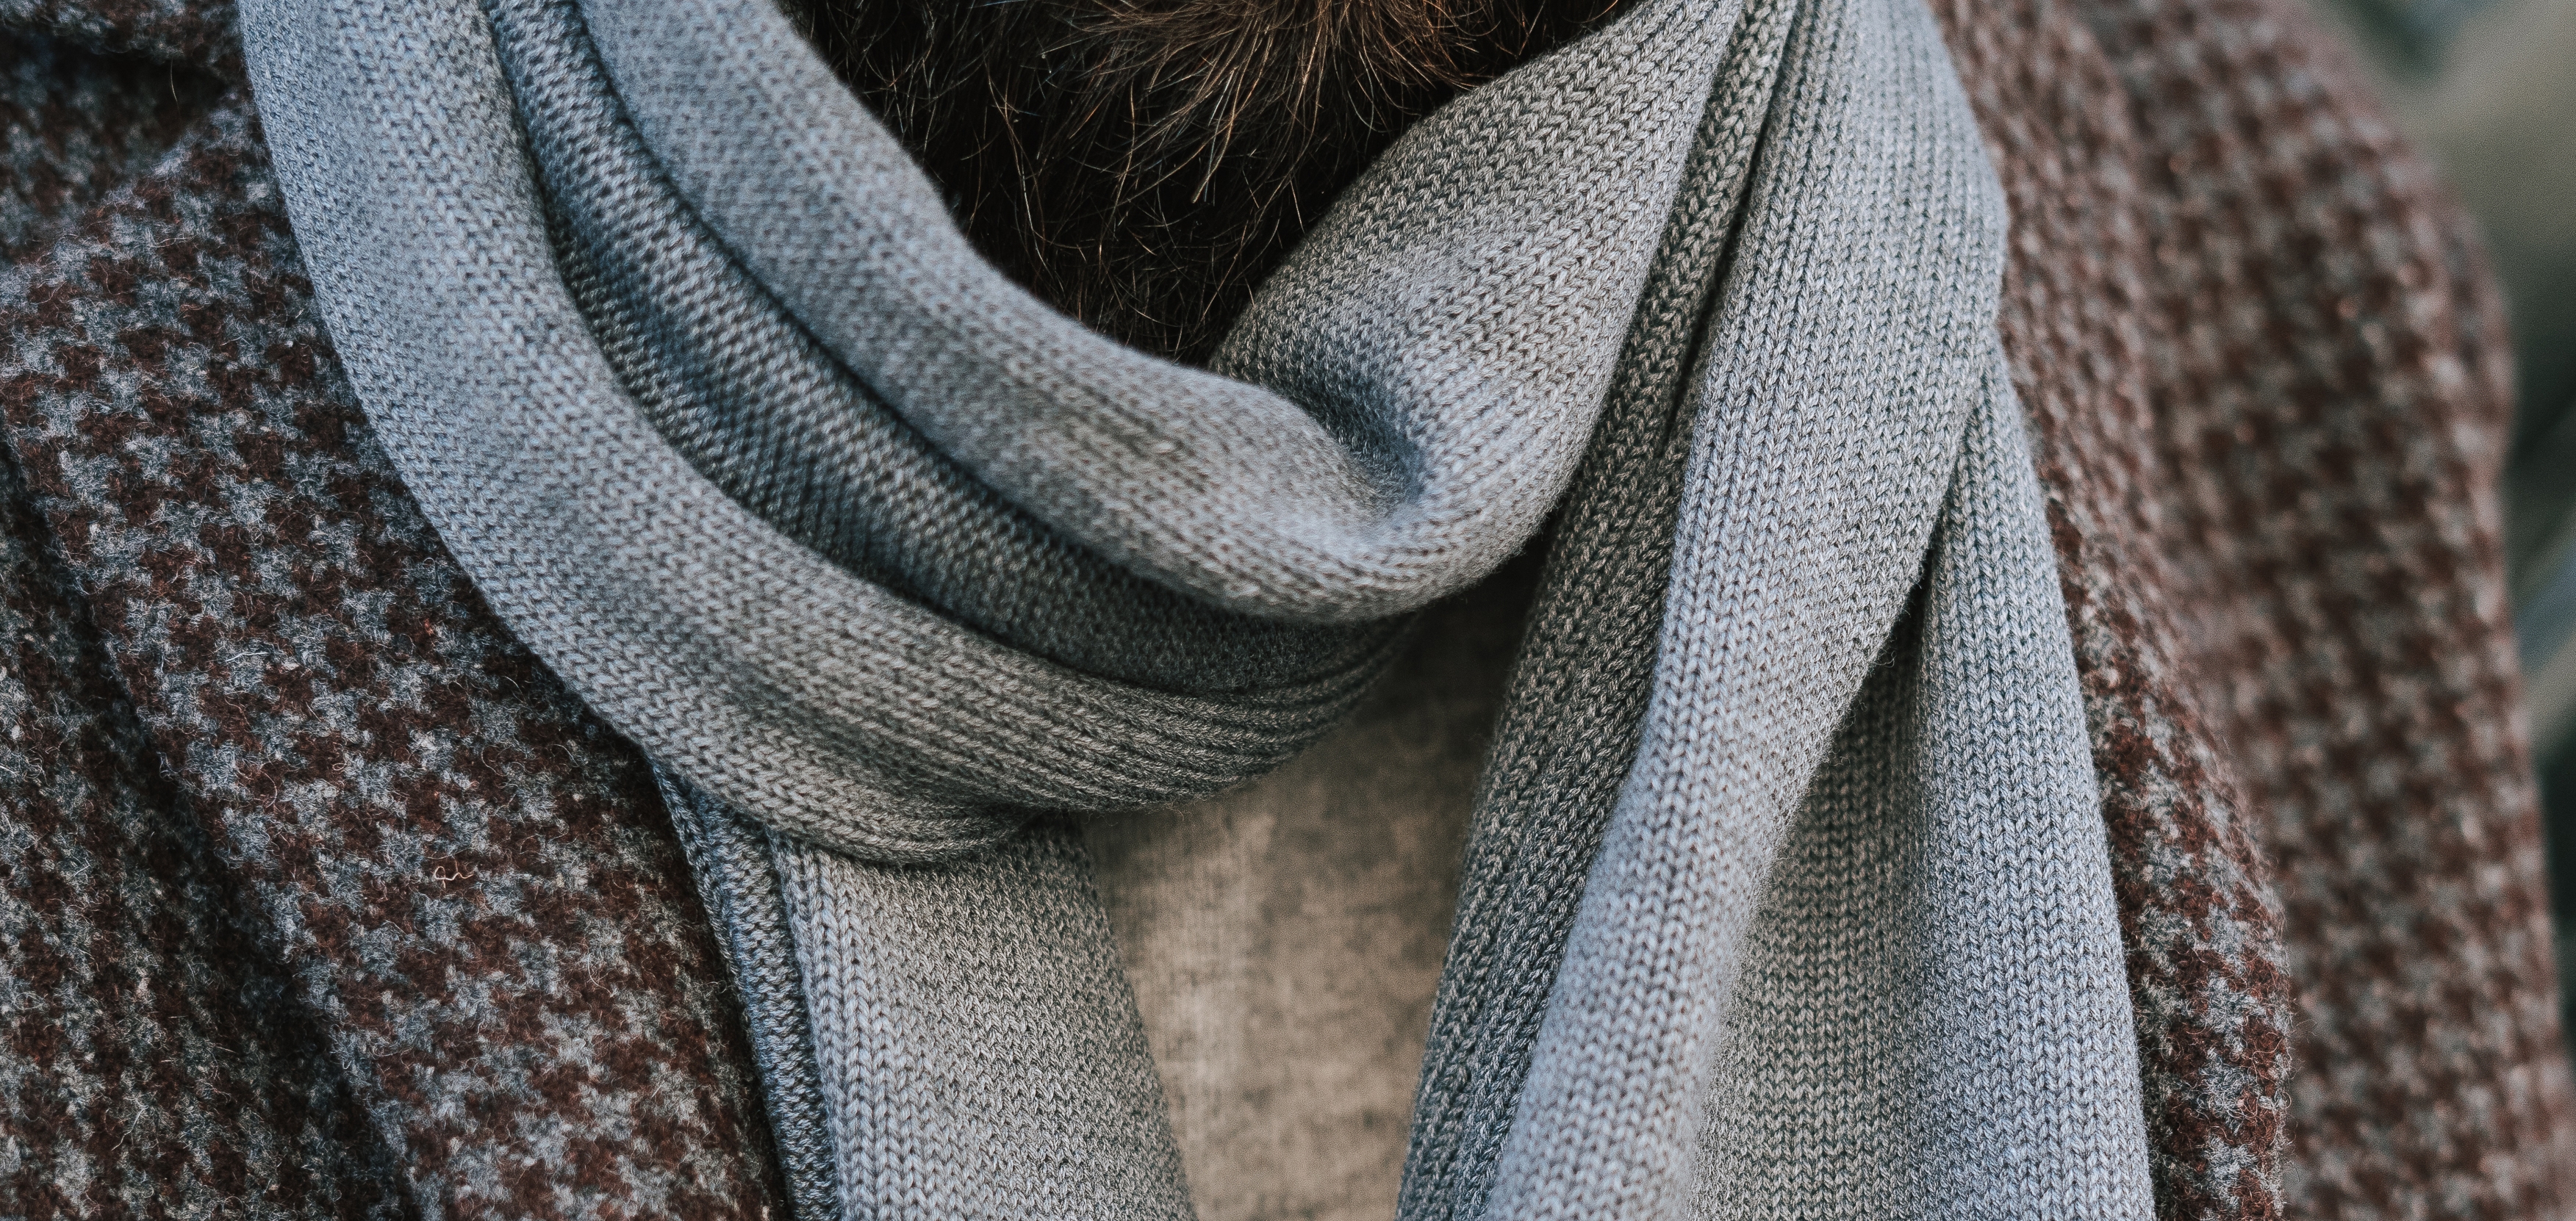 Bevise Far Blåt mærke 8 ting alle bør vide om halstørklæder